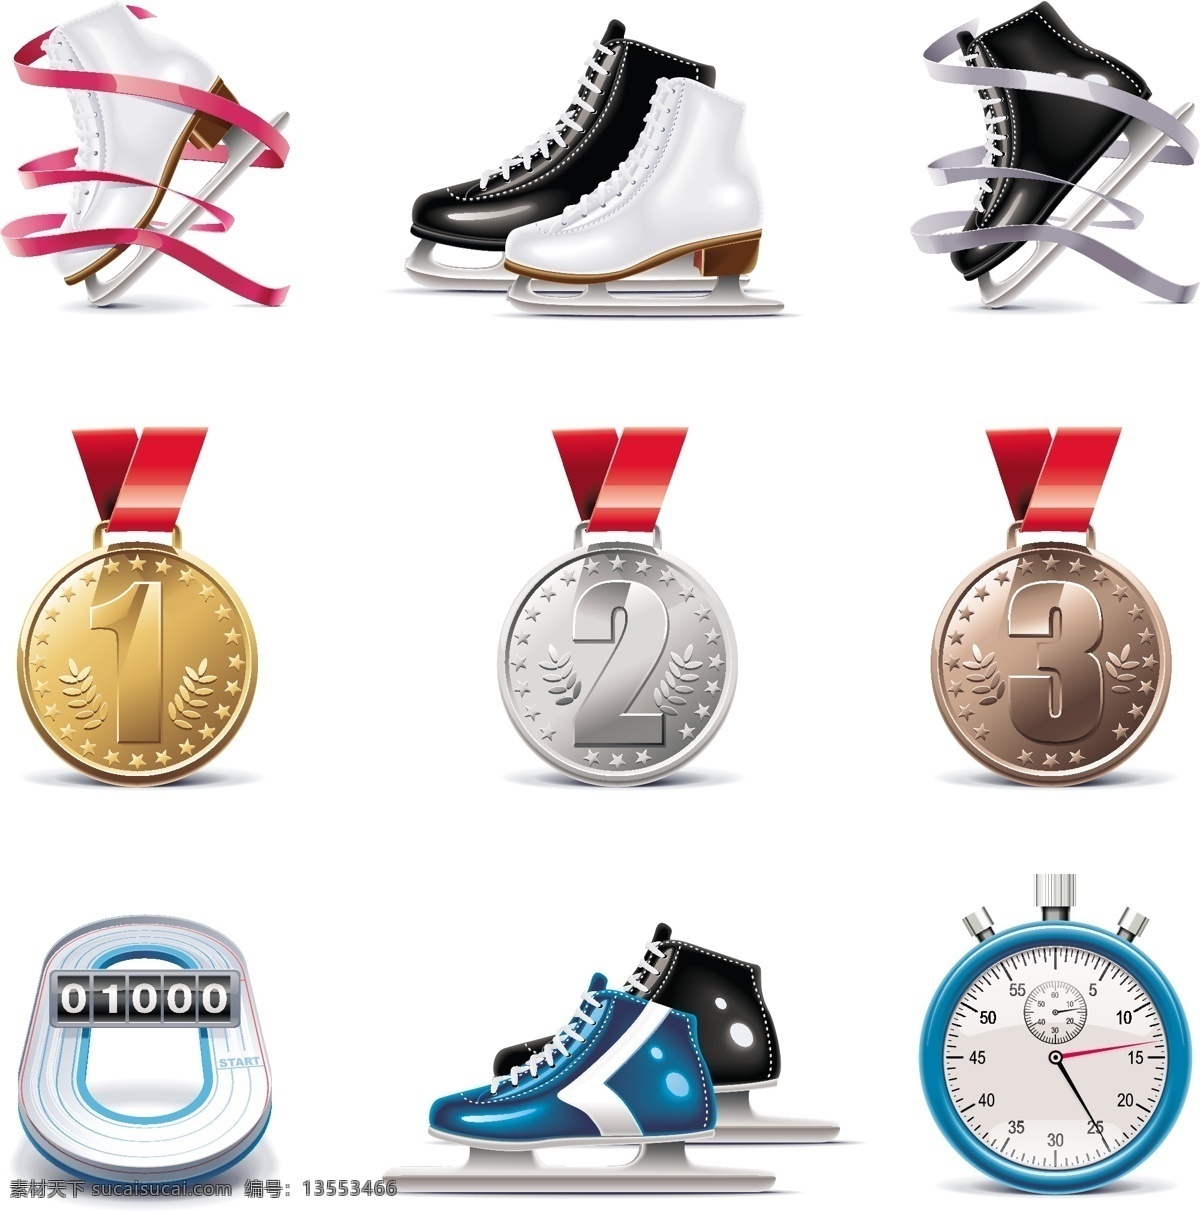 奖牌 溜冰鞋图标 金牌 银牌 铜牌 溜冰鞋 第一名 第二名 第三名 冠军 亚军 秒表 计数器 季军 标志 标识 立体图标 logo 图标 矢量